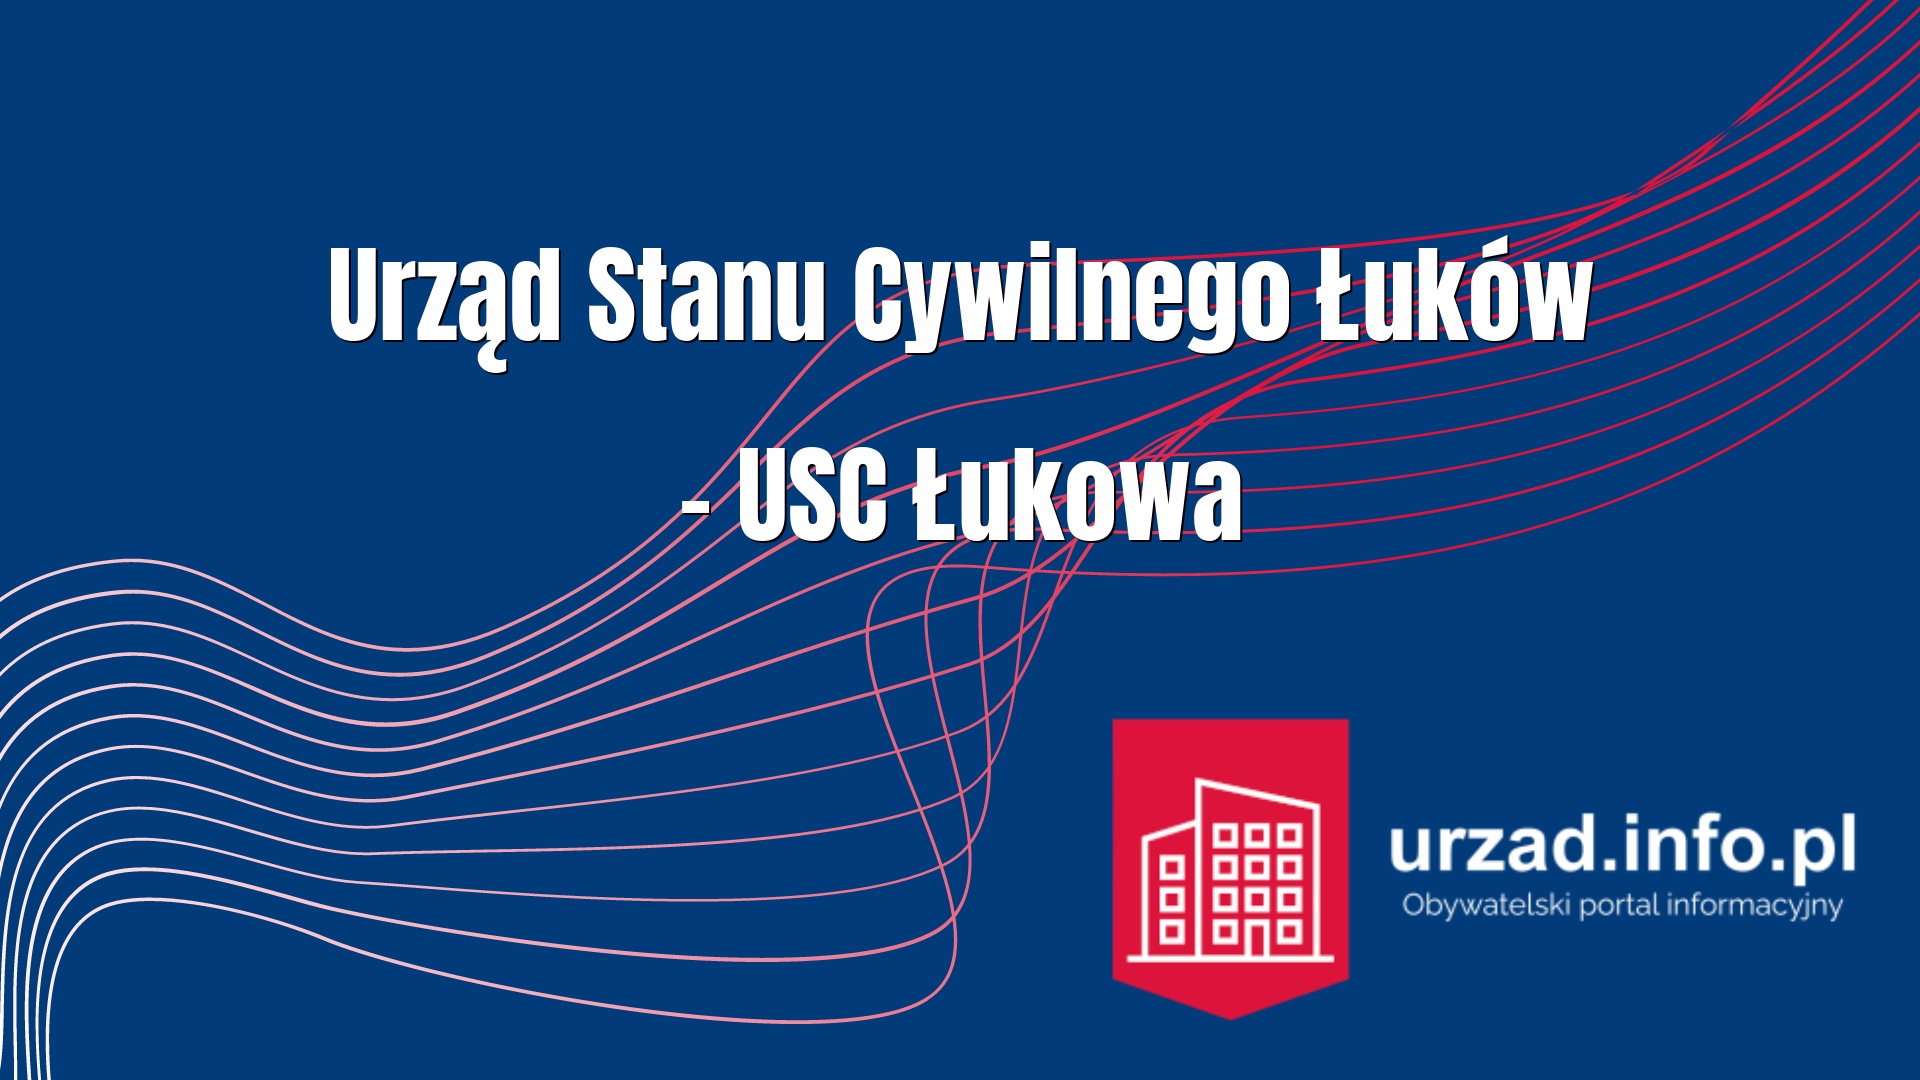 Urząd Stanu Cywilnego Łuków – USC Łukowa